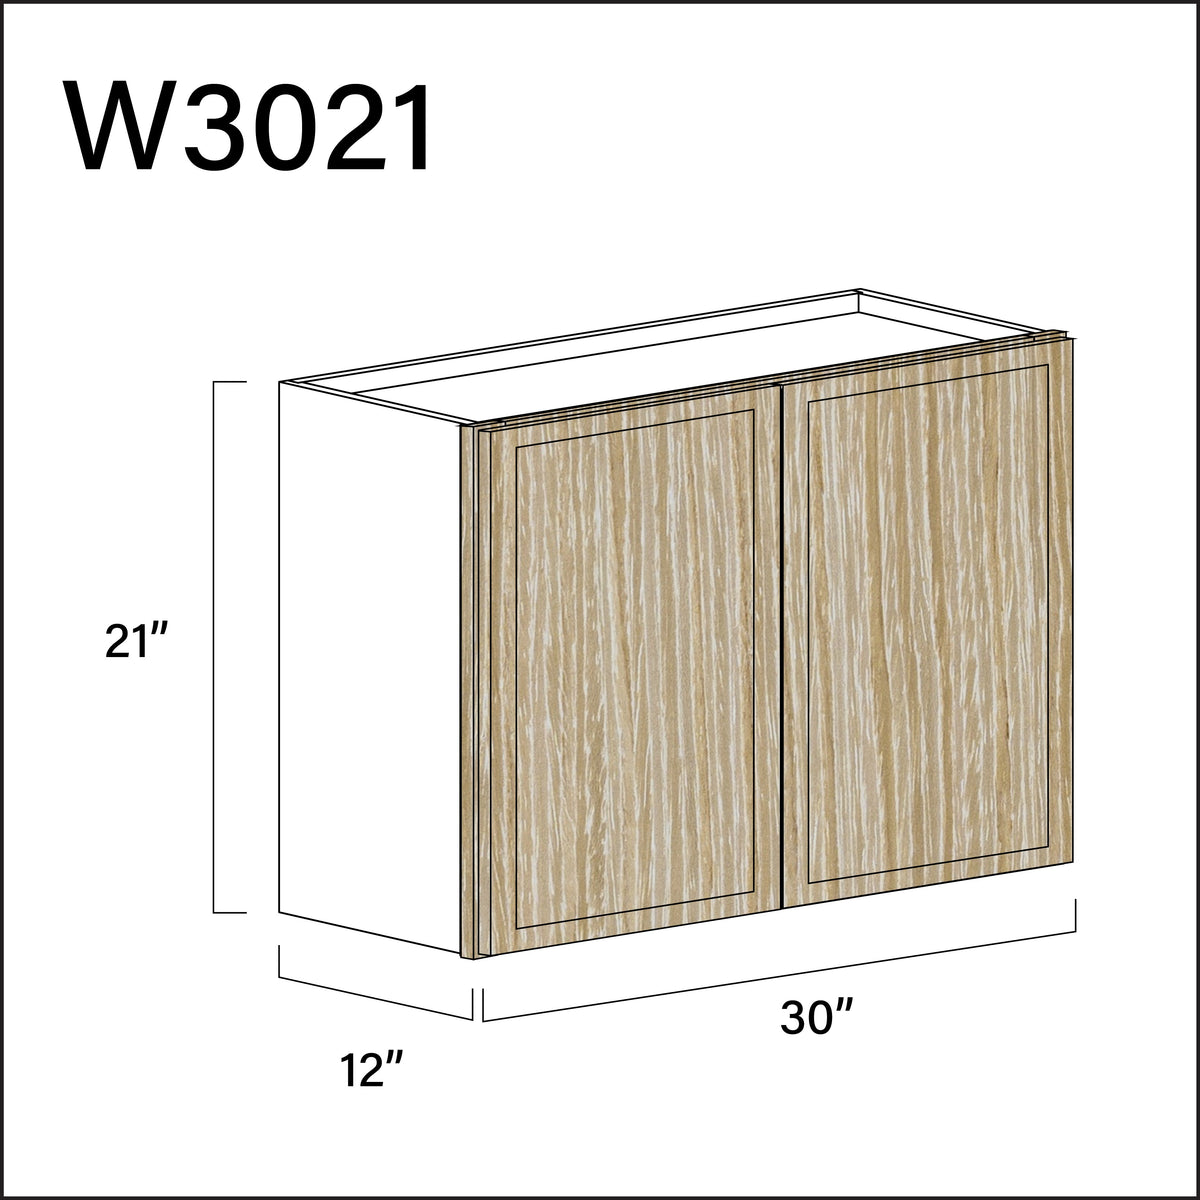 Milton Oak Slim Shaker Double Door Wall Cabinet - 30" W x 21" H x 12" D